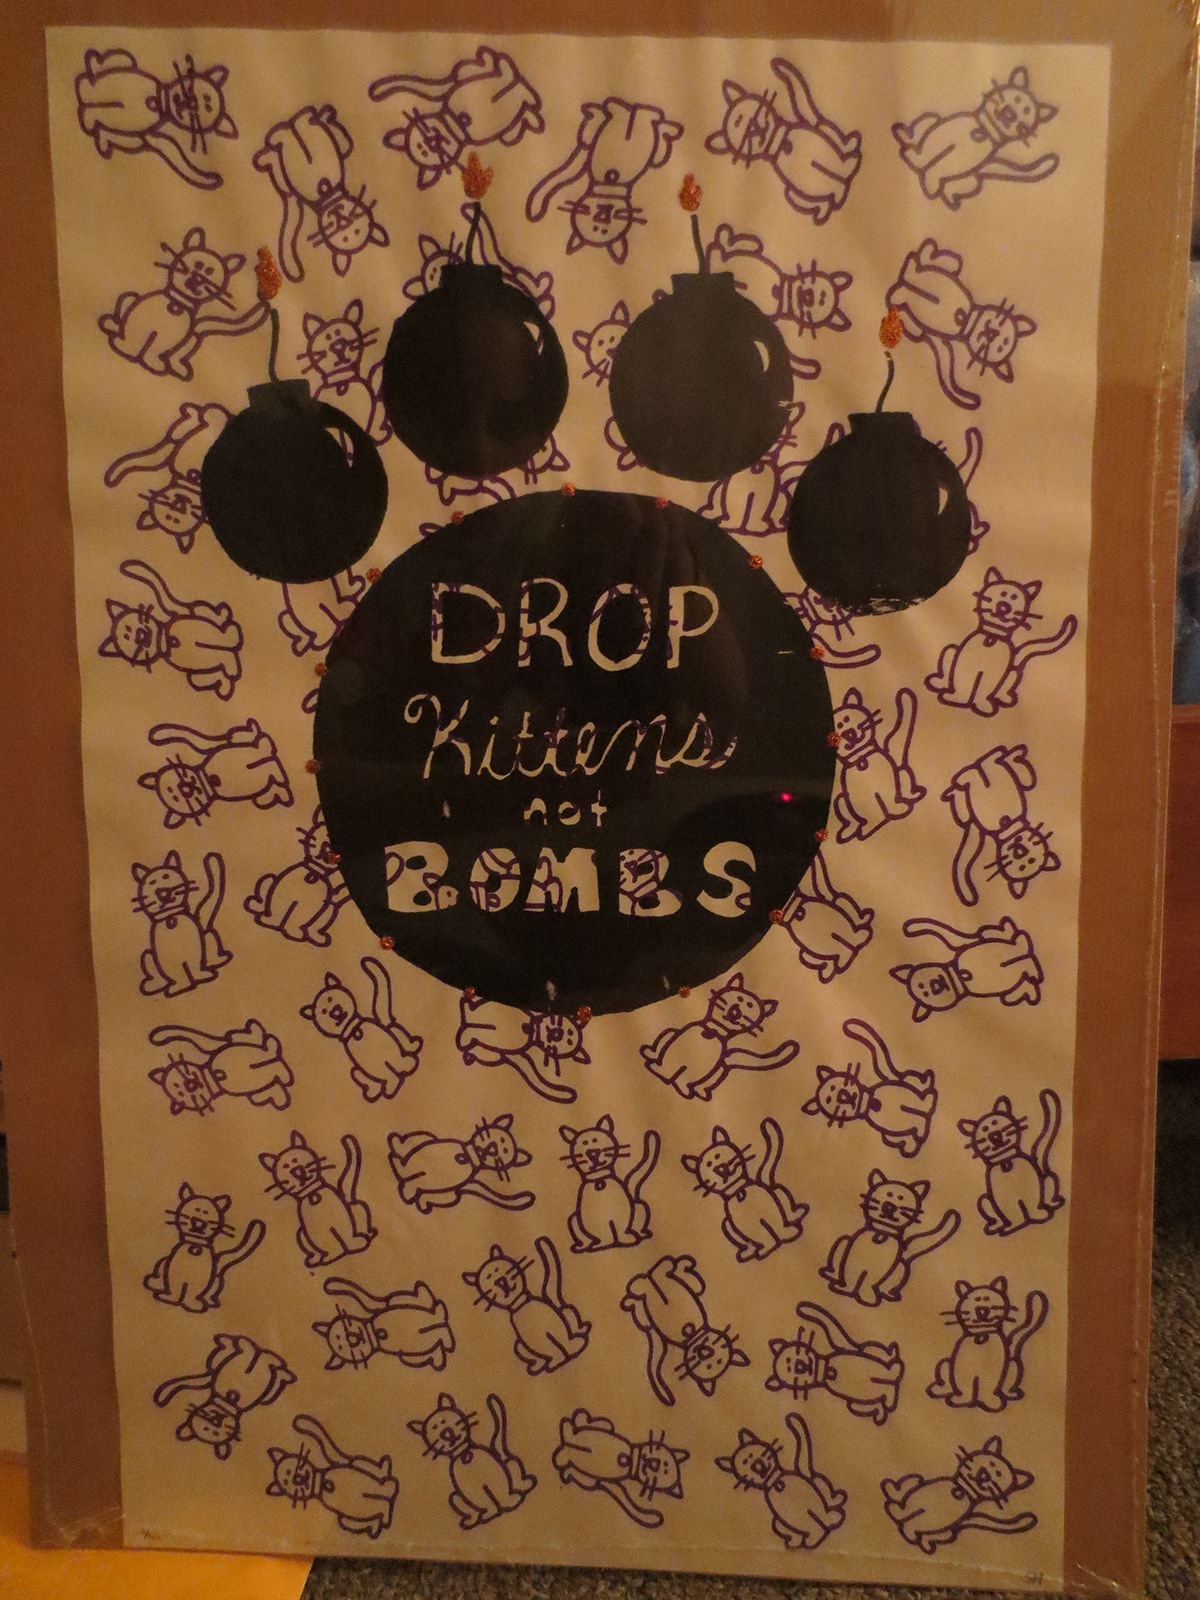 Drop Kittens  Not Bombs